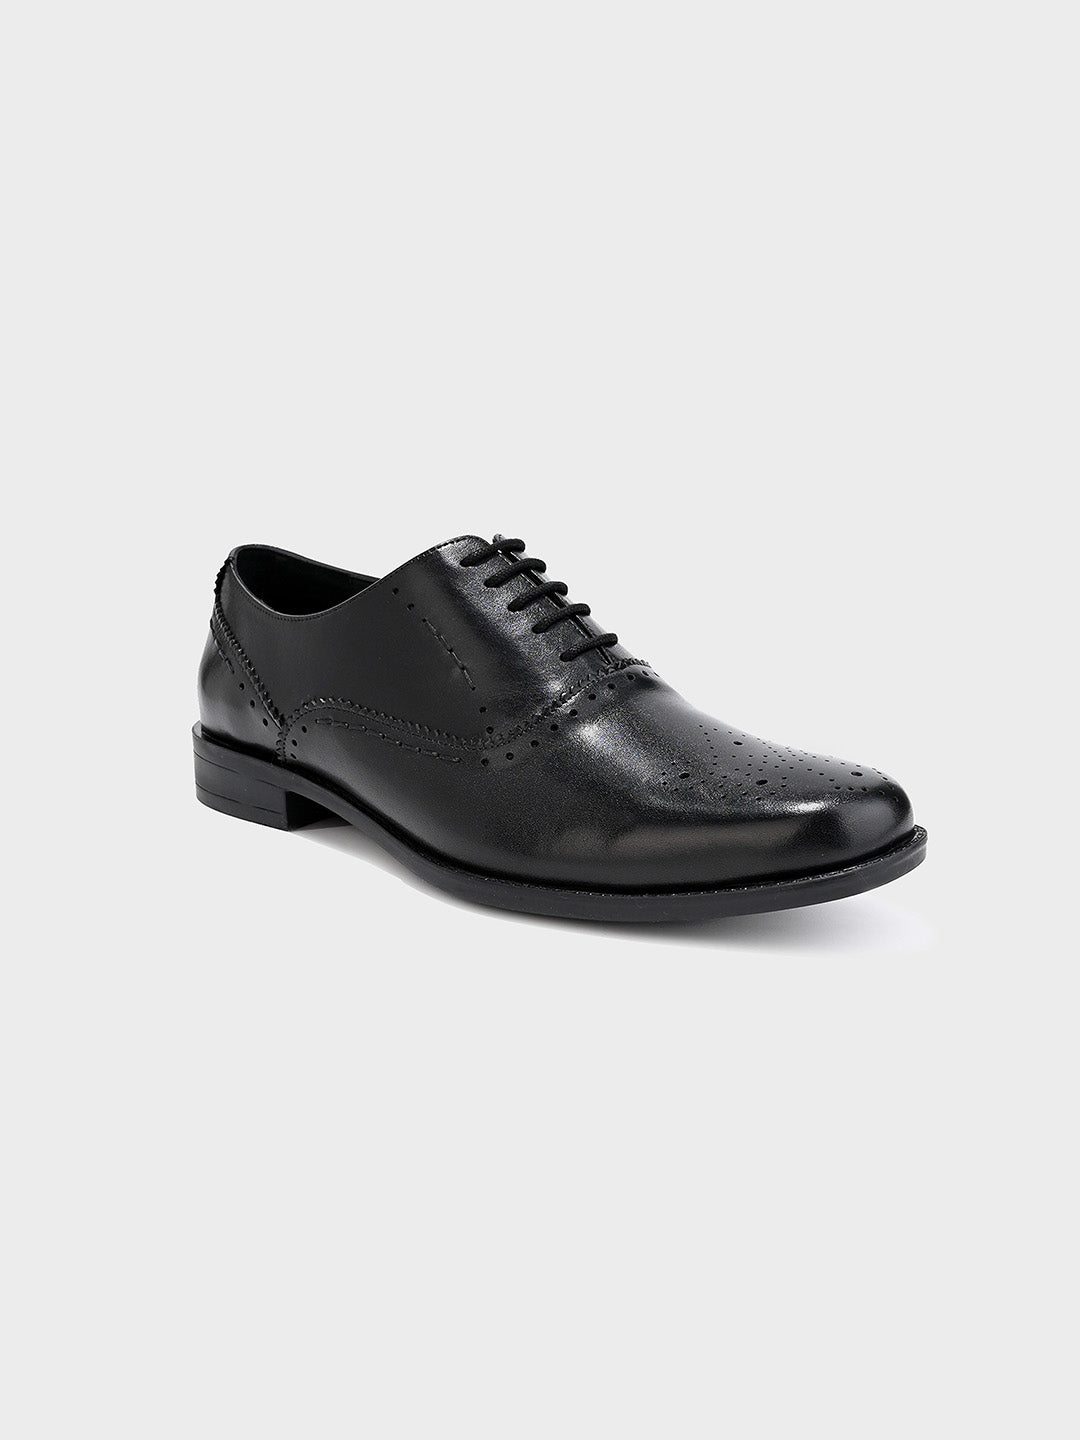 Men's Black Leather Brogue Lace-Up Shoes